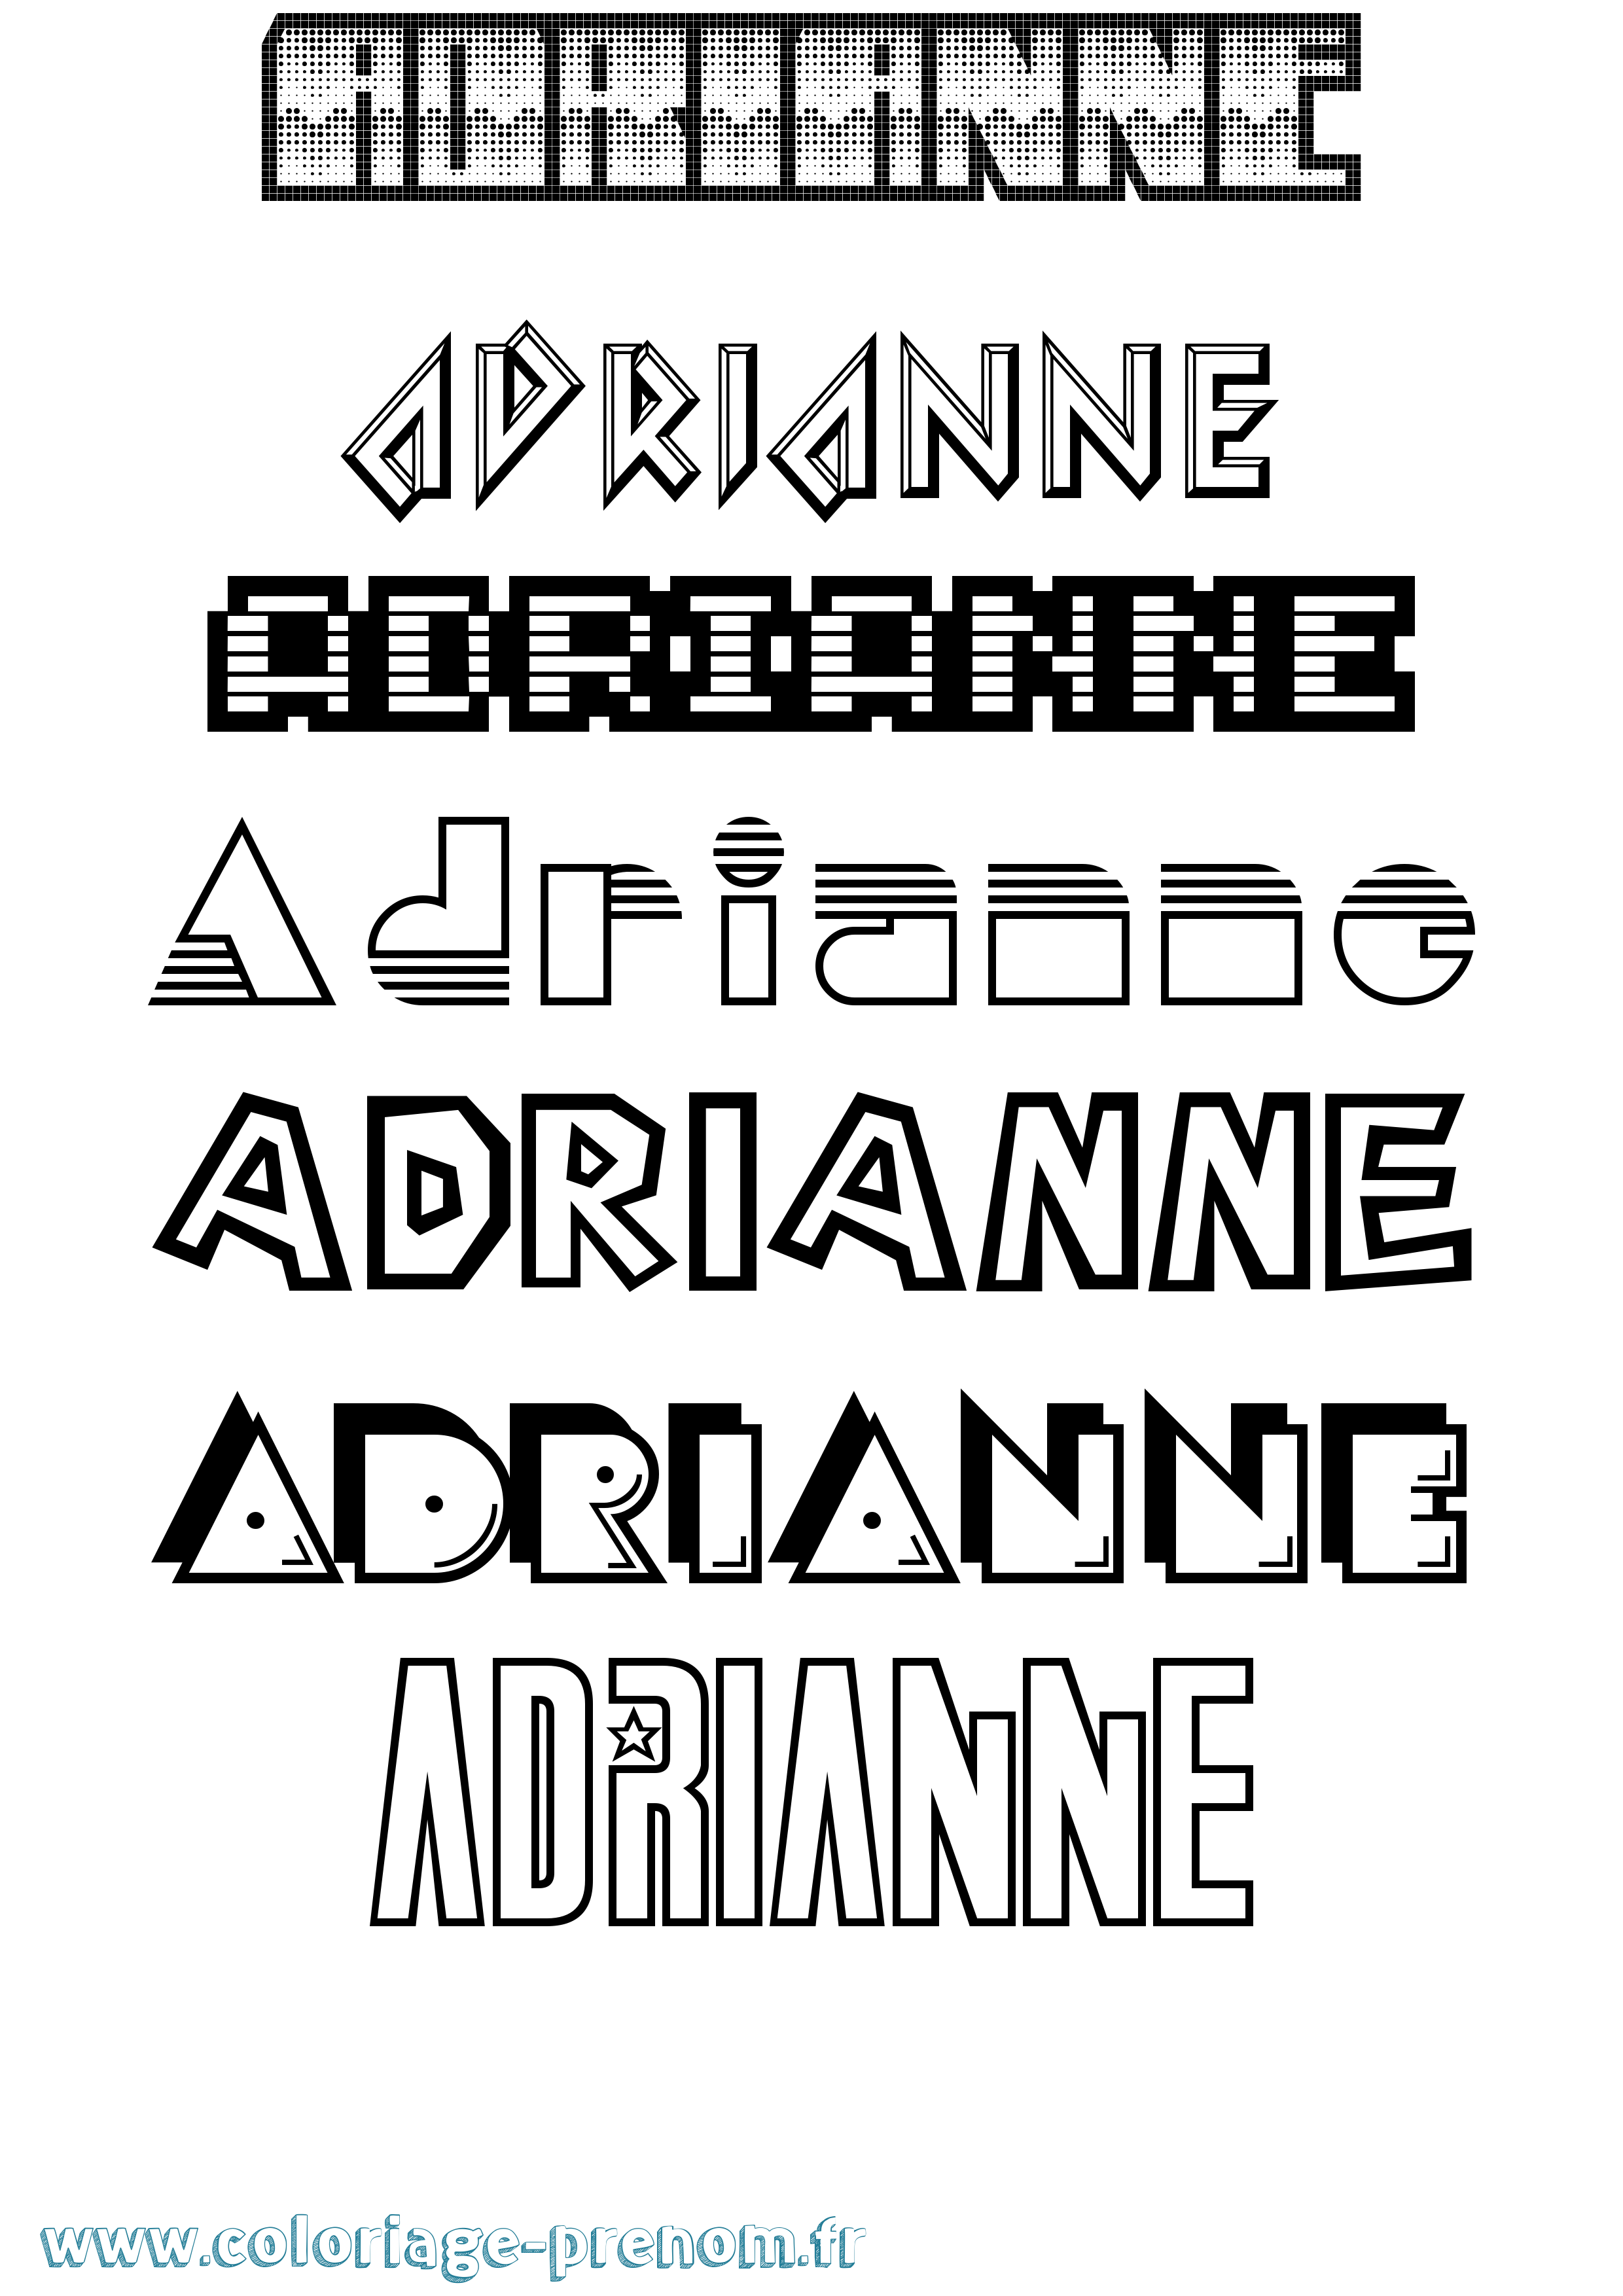 Coloriage prénom Adrianne Jeux Vidéos